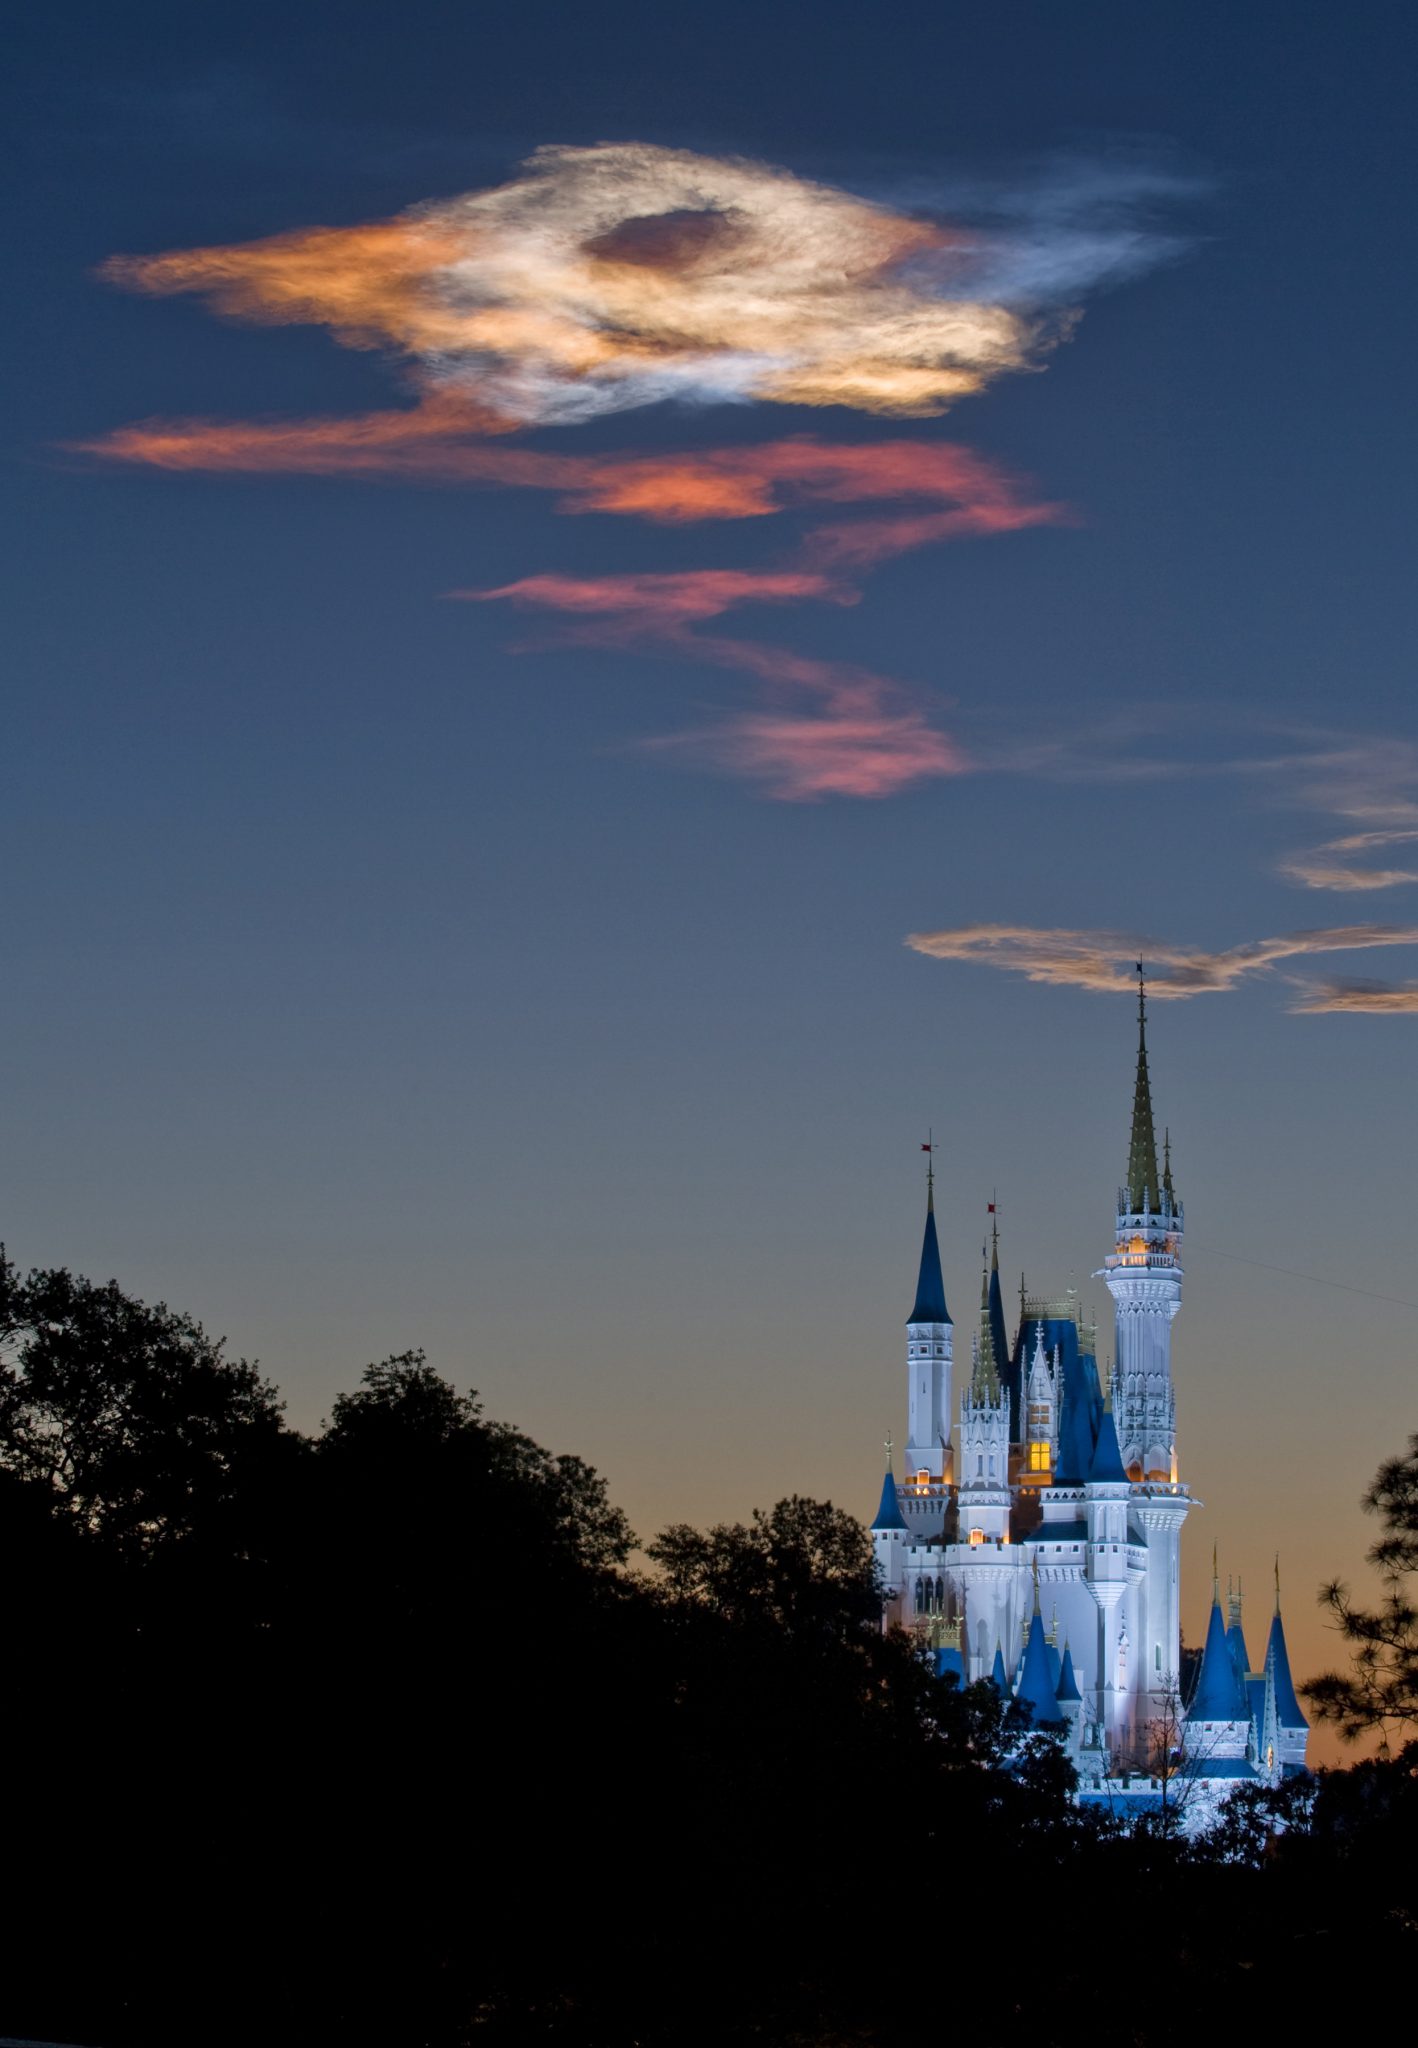 ResortLoop.com Episode 338 – Staying Safe At Walt Disney World